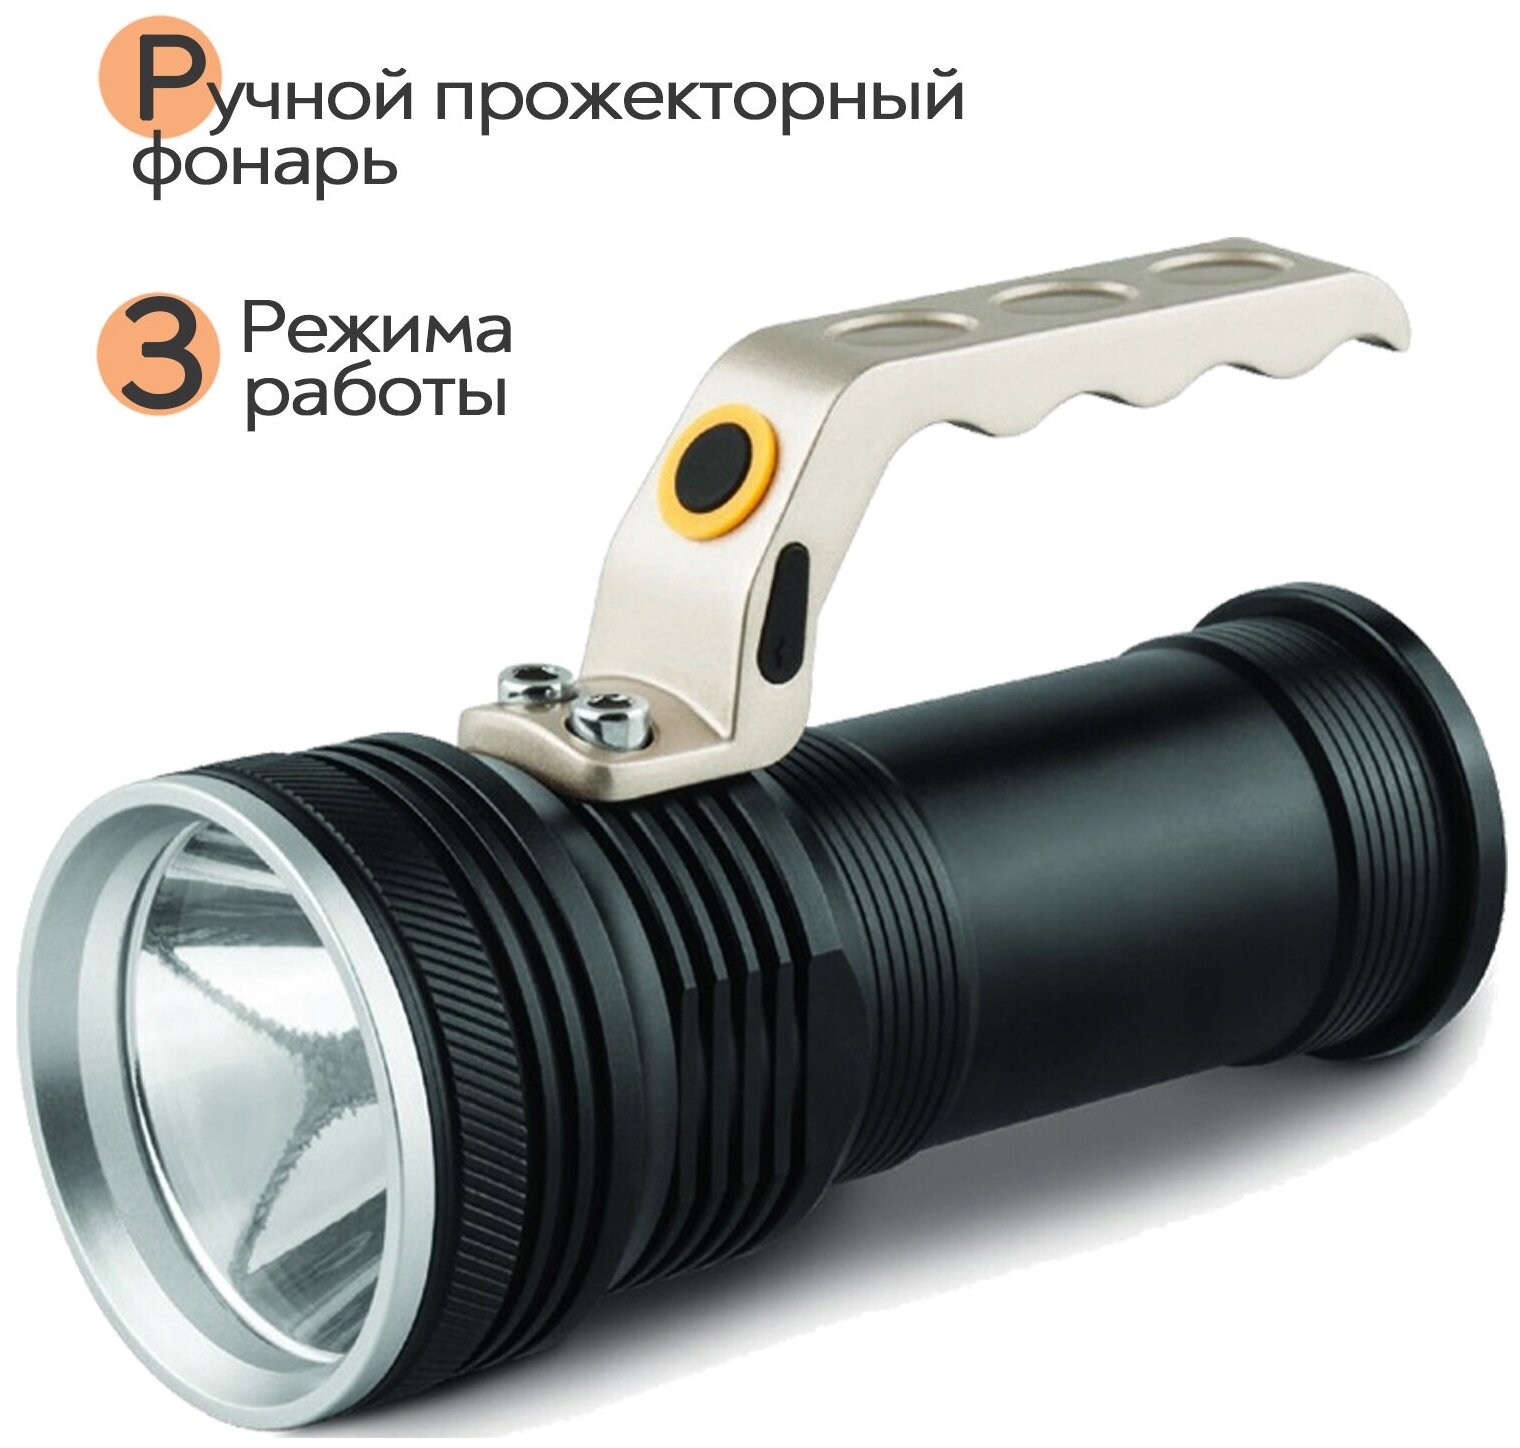 Мощный фонарь прожекторный SimpleShop с 3 режимами работы, эргономичной ручкой и регулировкой яркости